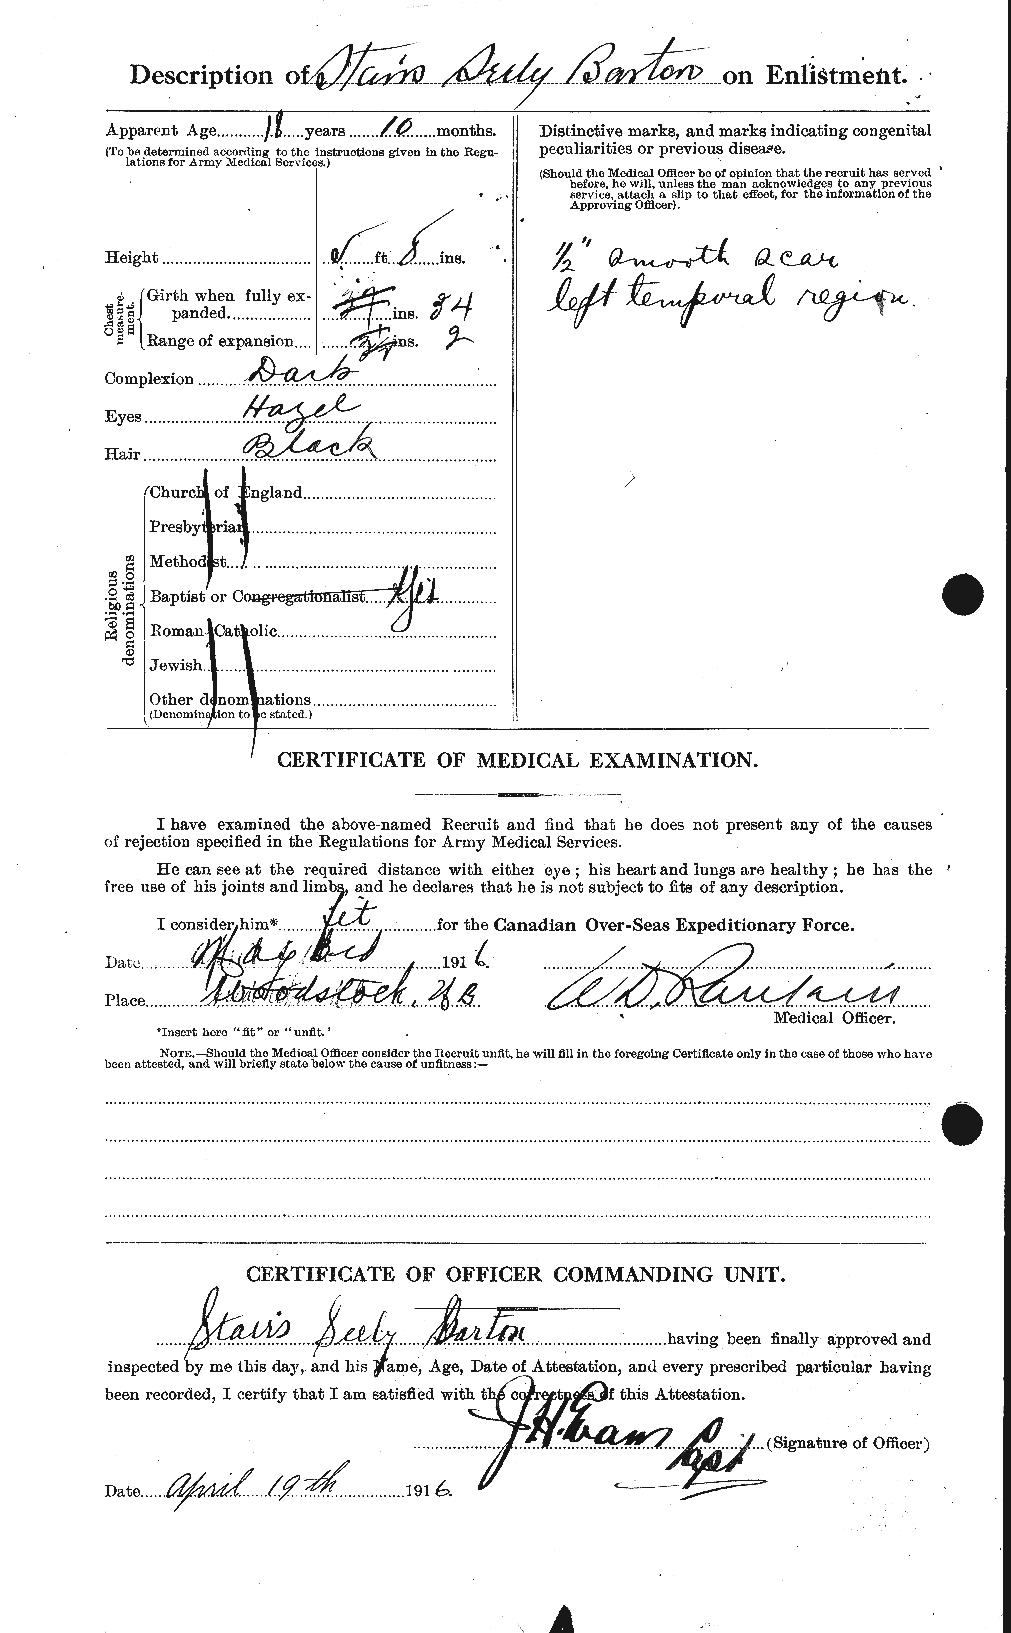 Dossiers du Personnel de la Première Guerre mondiale - CEC 116683b